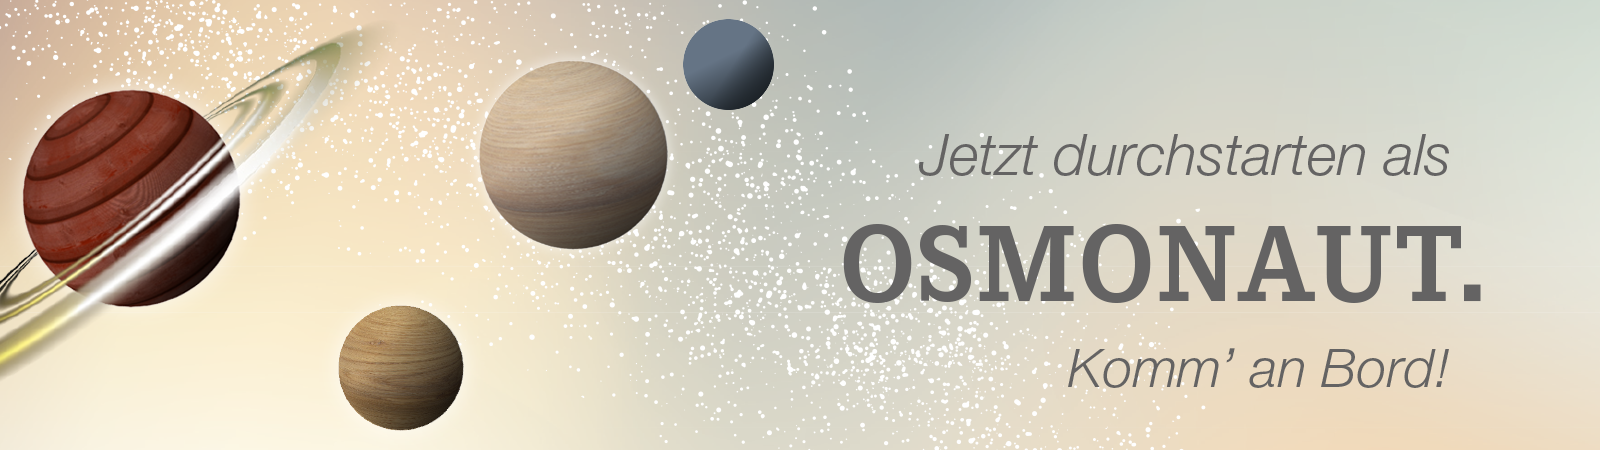 Werde Osmonaut bei Osmo und gestalte dir deine Zukunft als Fachkraft für Lagerlogistik w/m/d